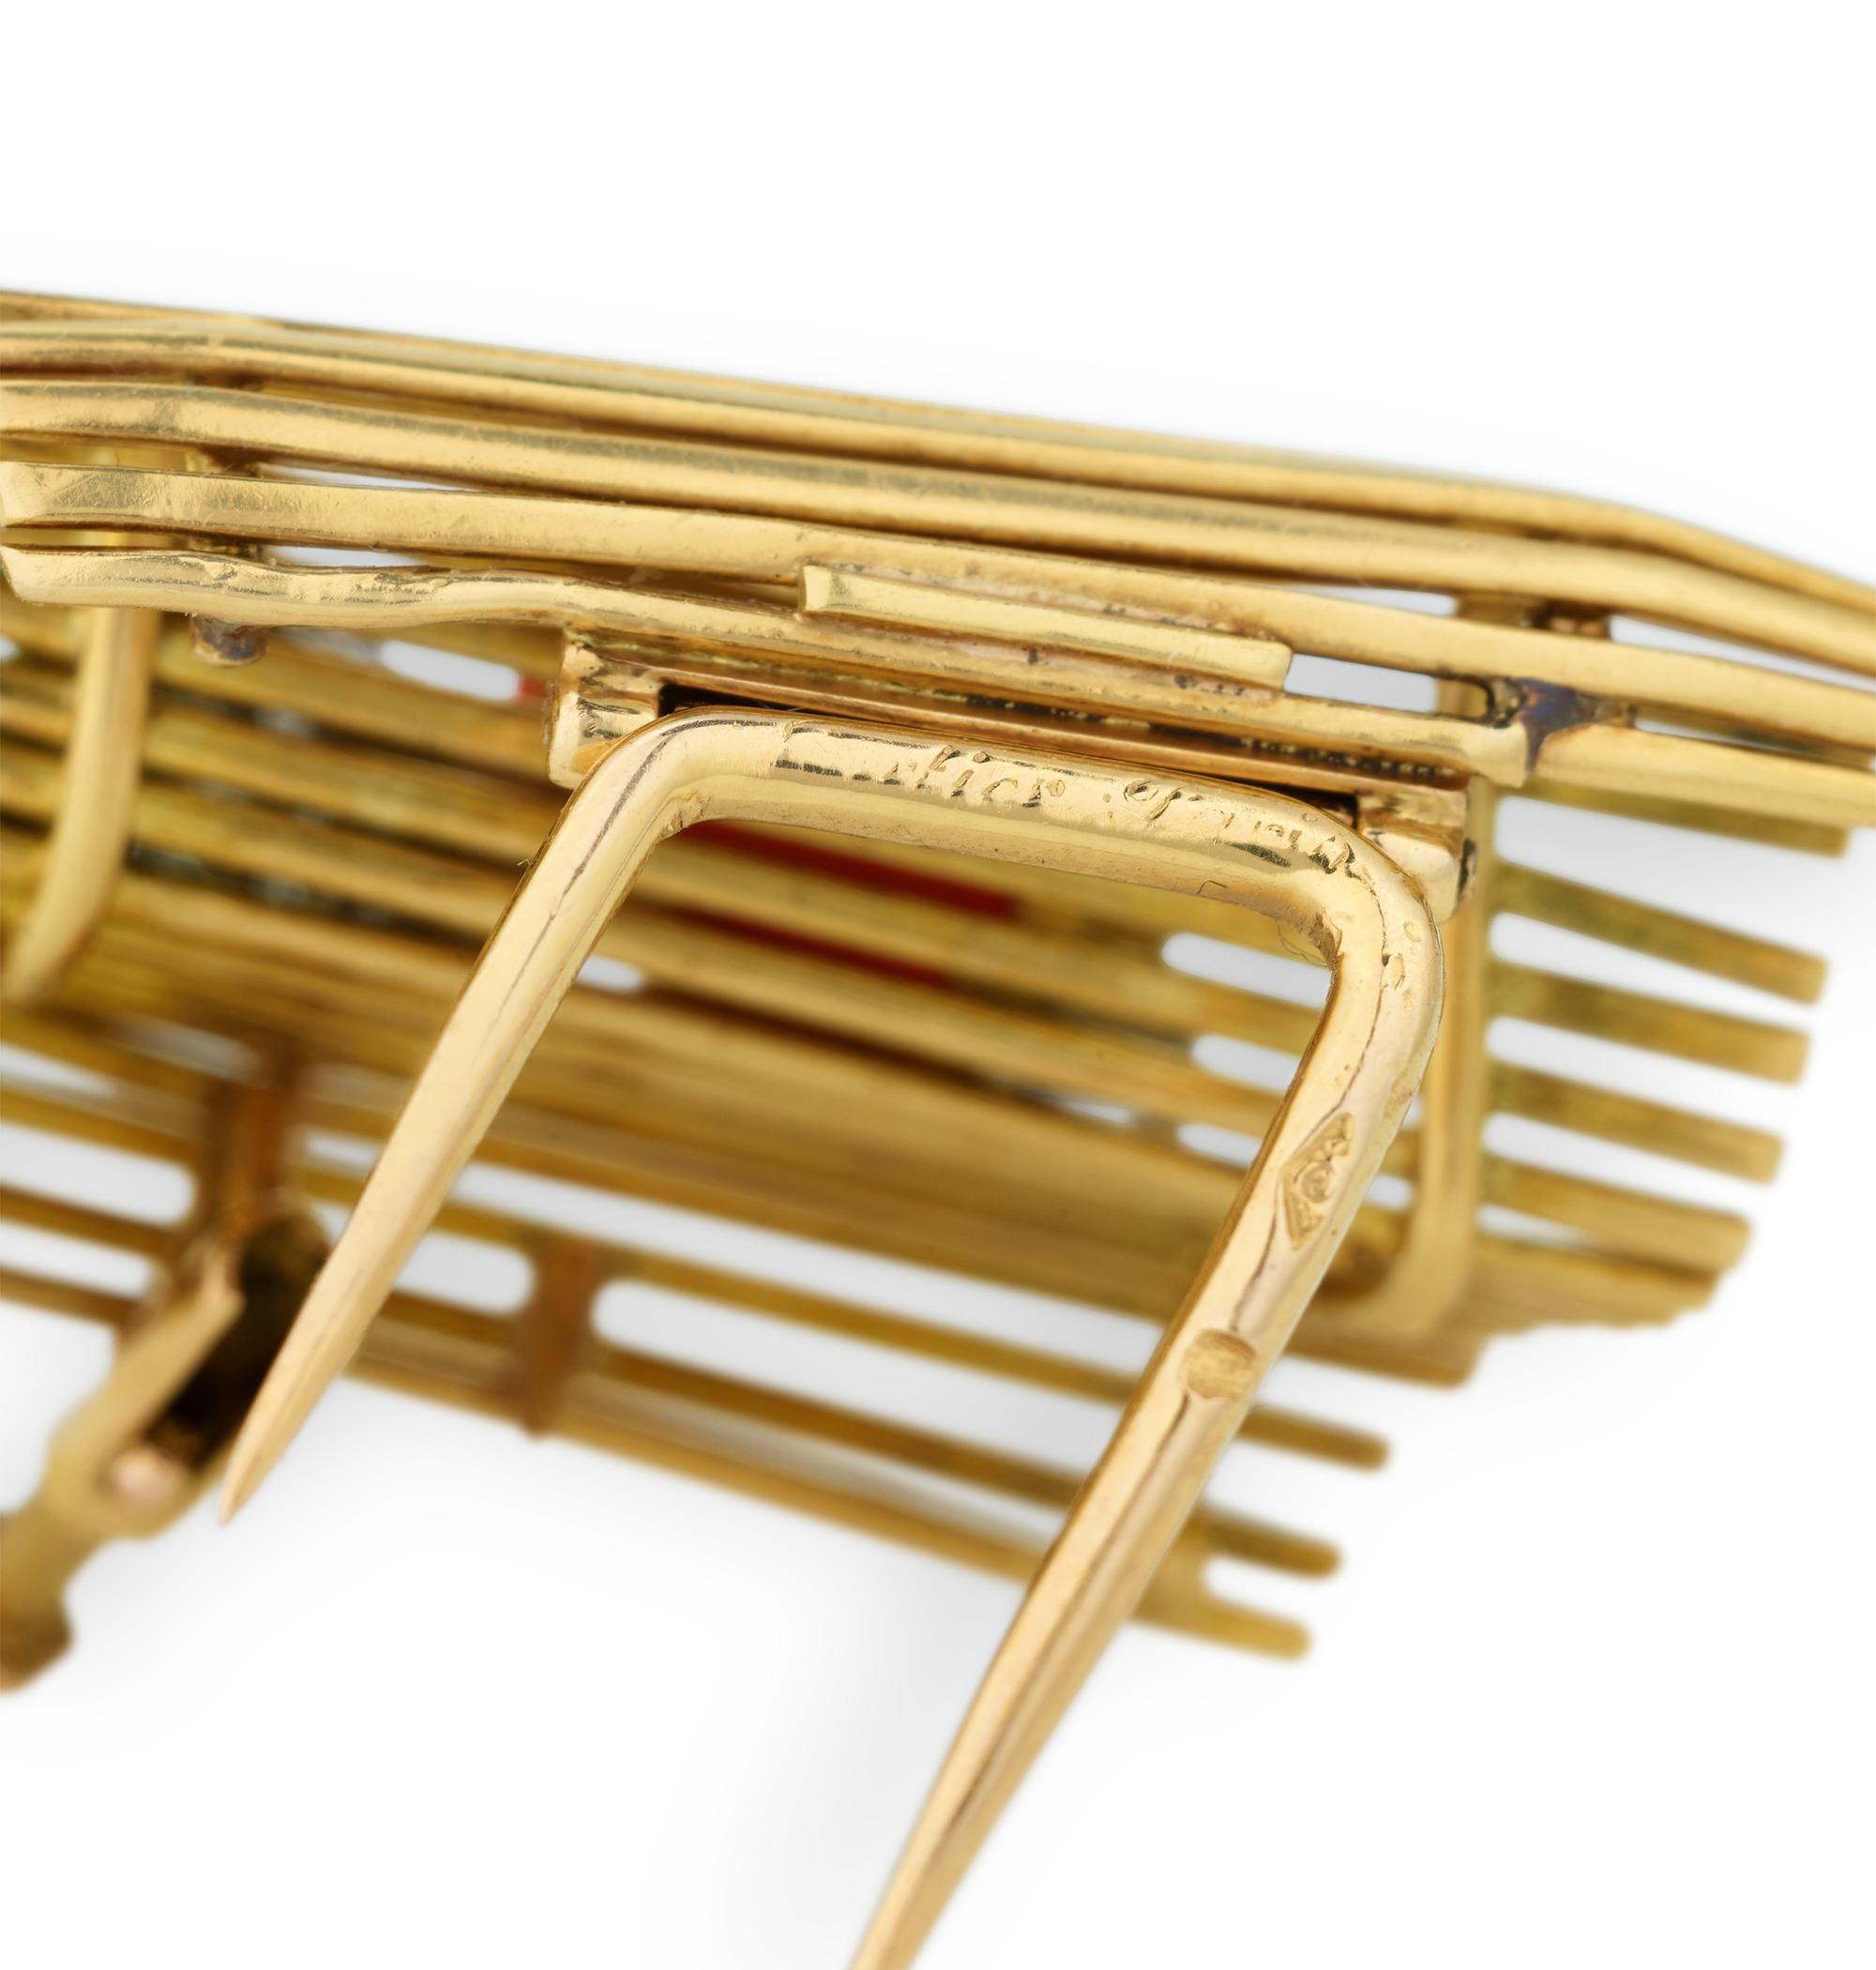 Diese charmante und skurrile Retro-Brosche des französischen Juweliers Cartier ist bekannt als die kultige Tutti Frutti Lovers Bench-Brosche. Die aus 18 Karat Gelbgold gefertigte Brosche zeigt eine Miniatur-Parkbank, auf der ein aus Edelsteinen